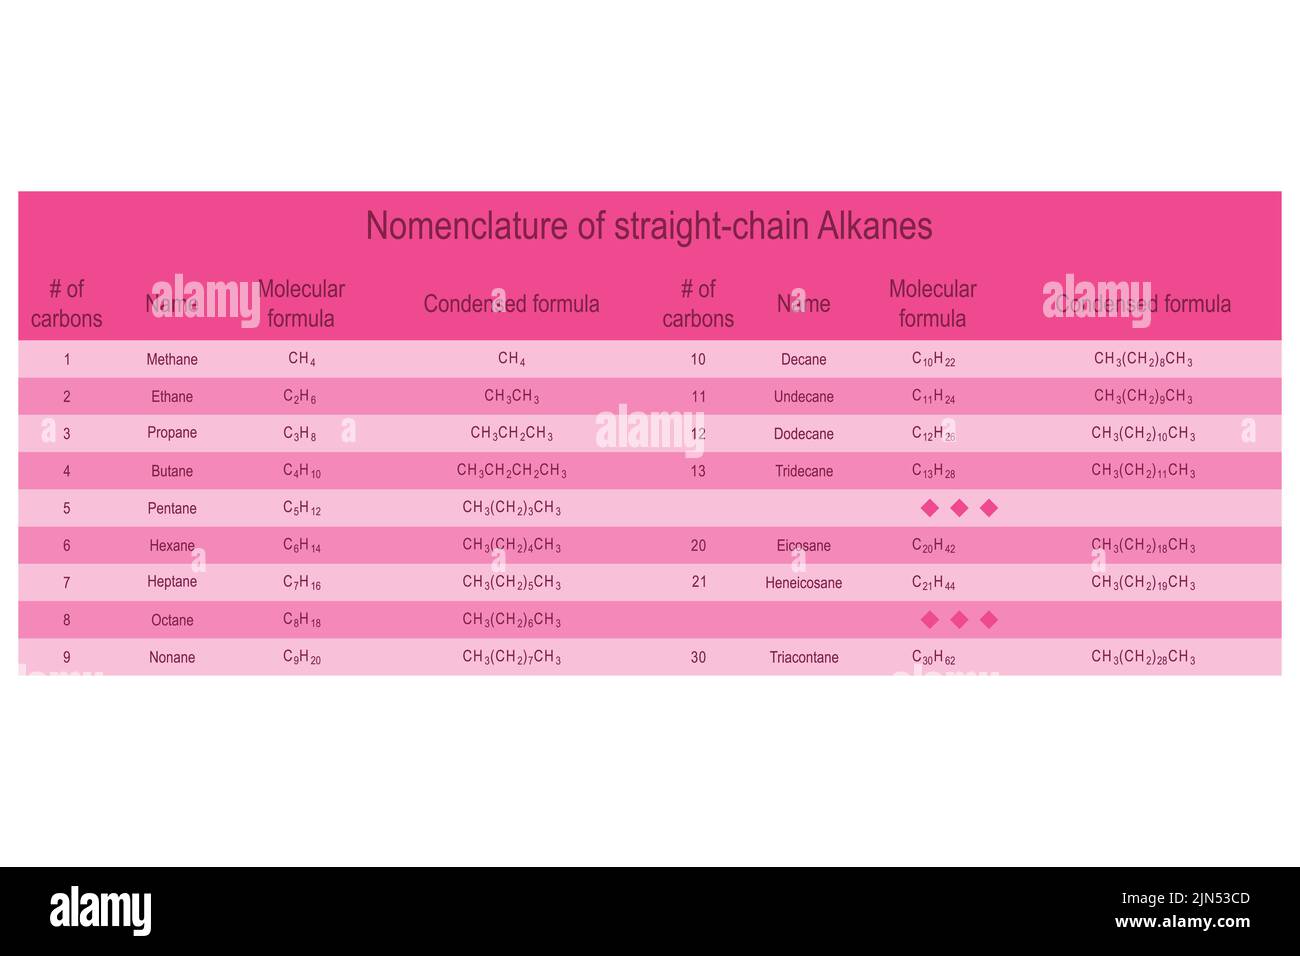 Tabelle der Nomenklatur der geradkettigen Alkane - Methan durch Treidecan. Ausbildung zur organischen Chemie - rosa. Stock Vektor